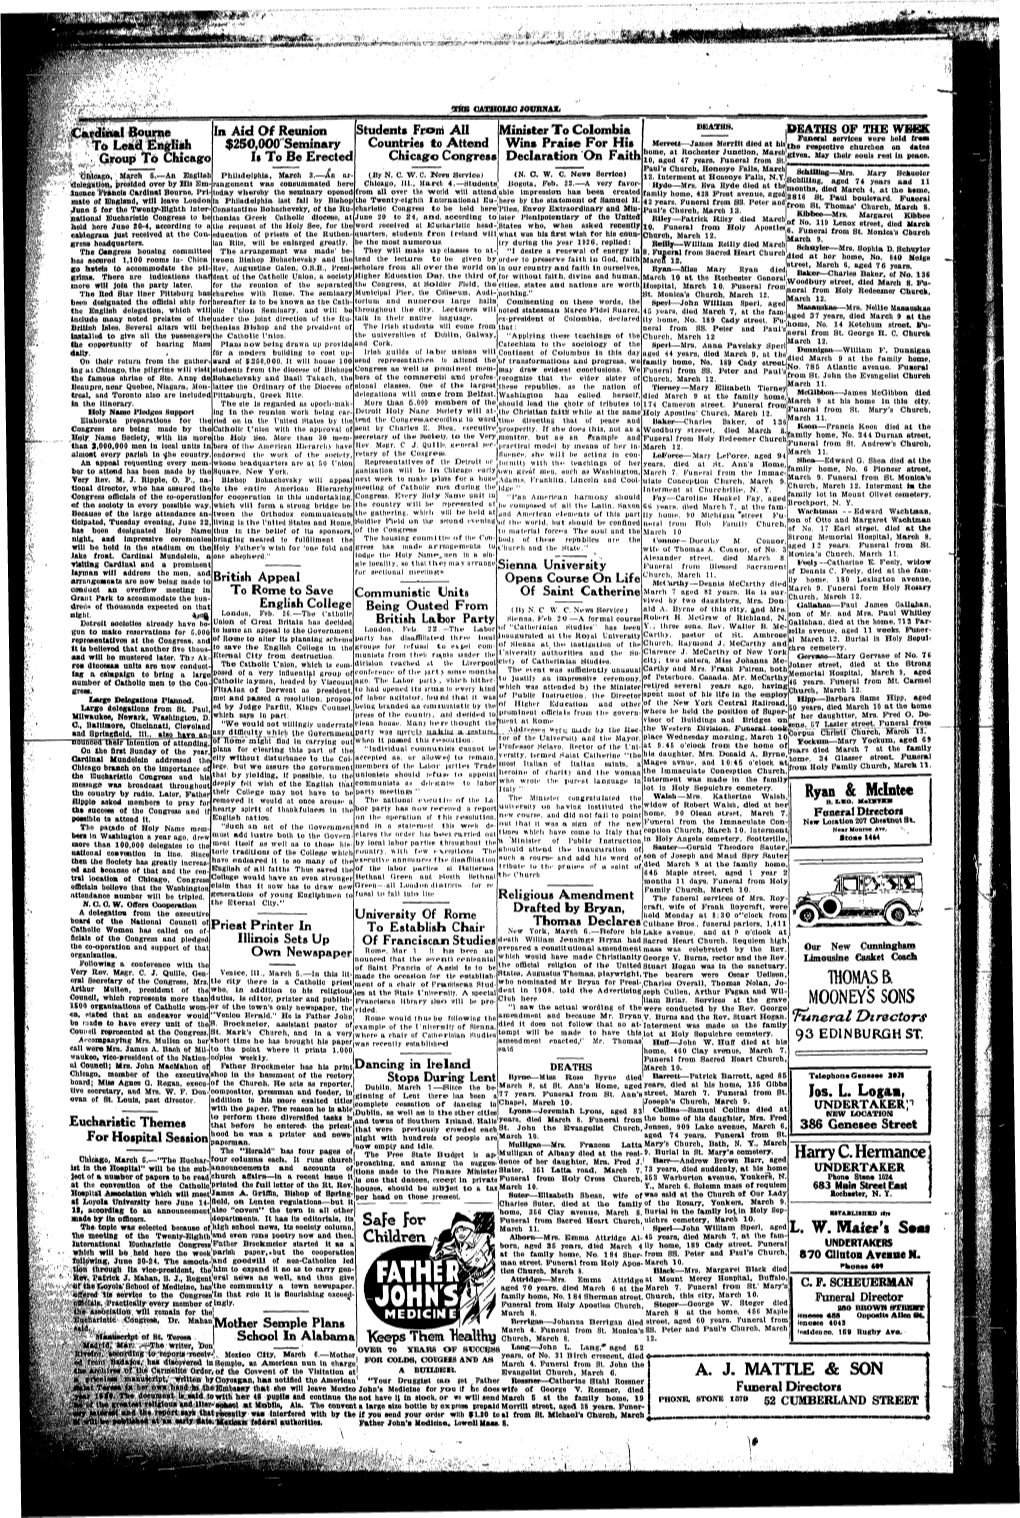 Catholic-Journal-1925-February-1928